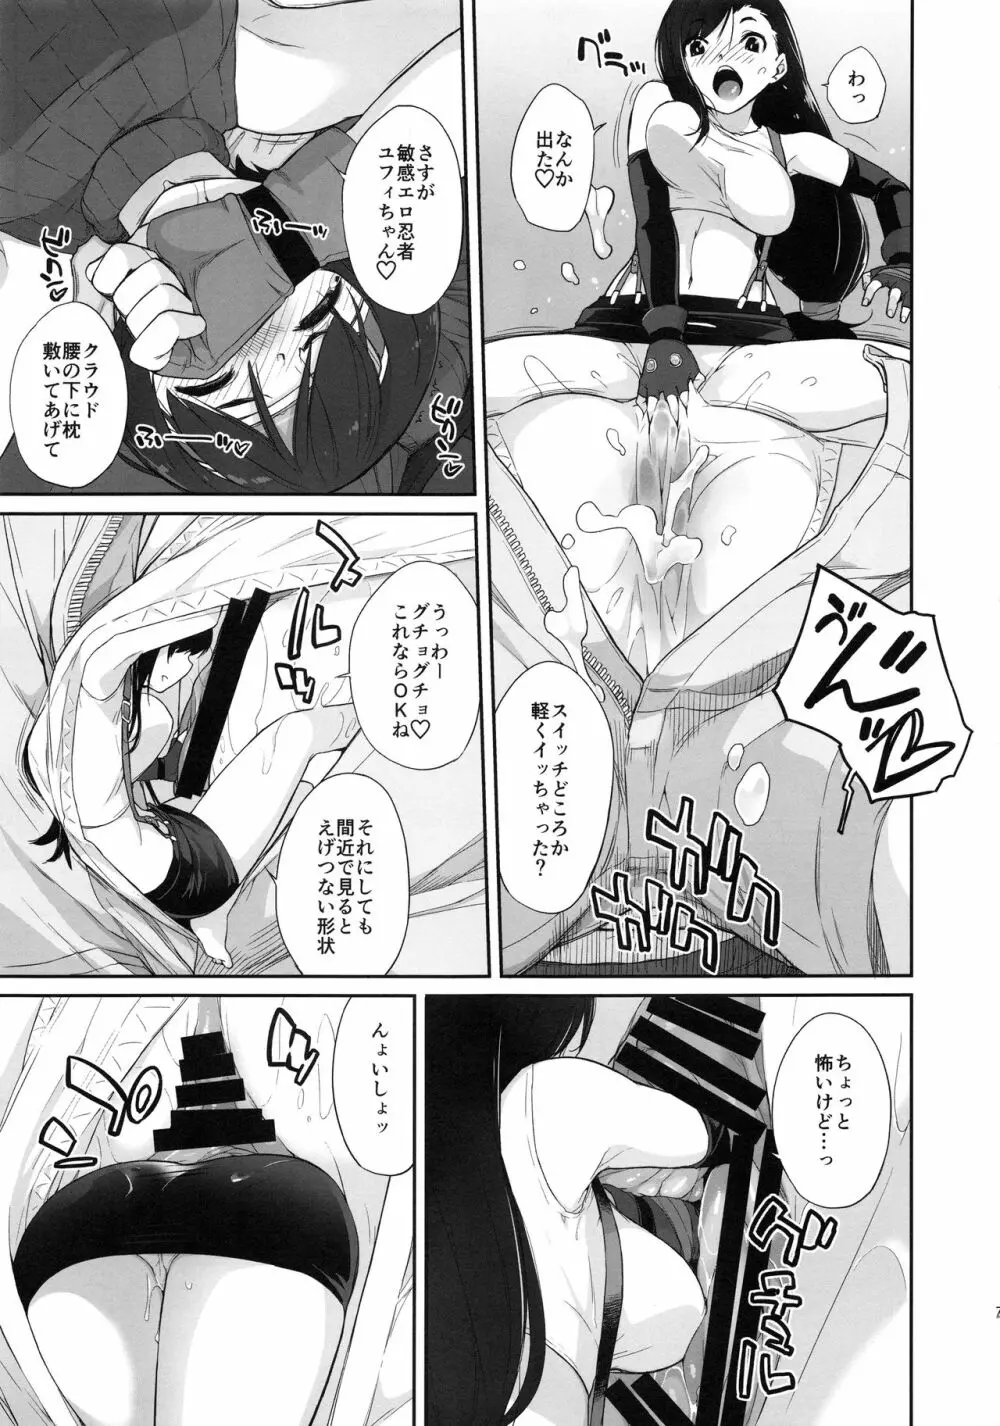 マテリア×ガール#2 ティファのミニマム大作戦! - page7